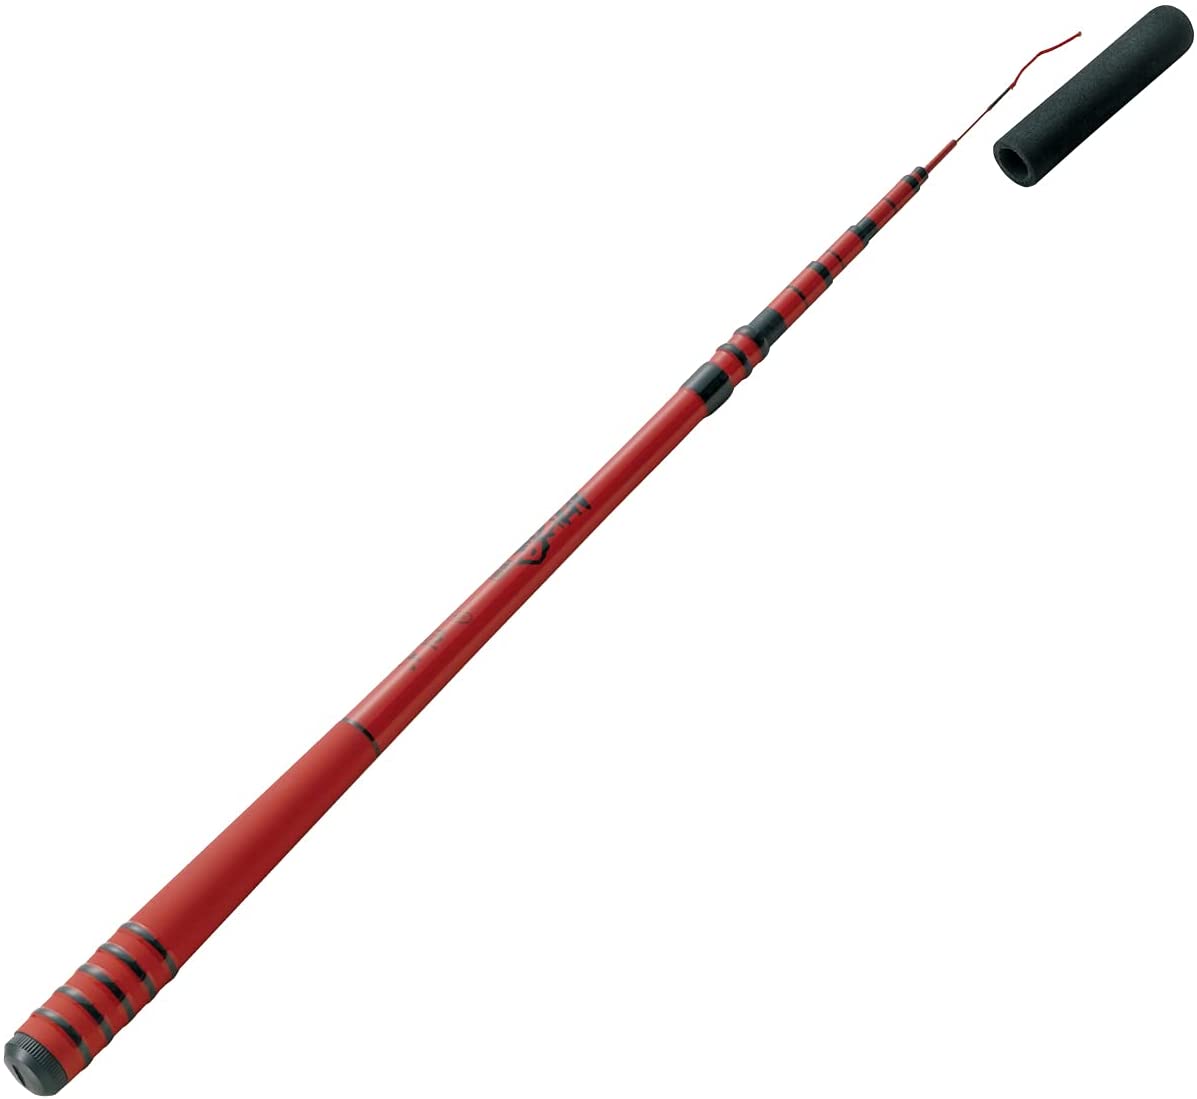 TIEMCO 456 Akatsuri Adjustable Microfishing Rod 144 - 185 cm (4'9" - 6'1")